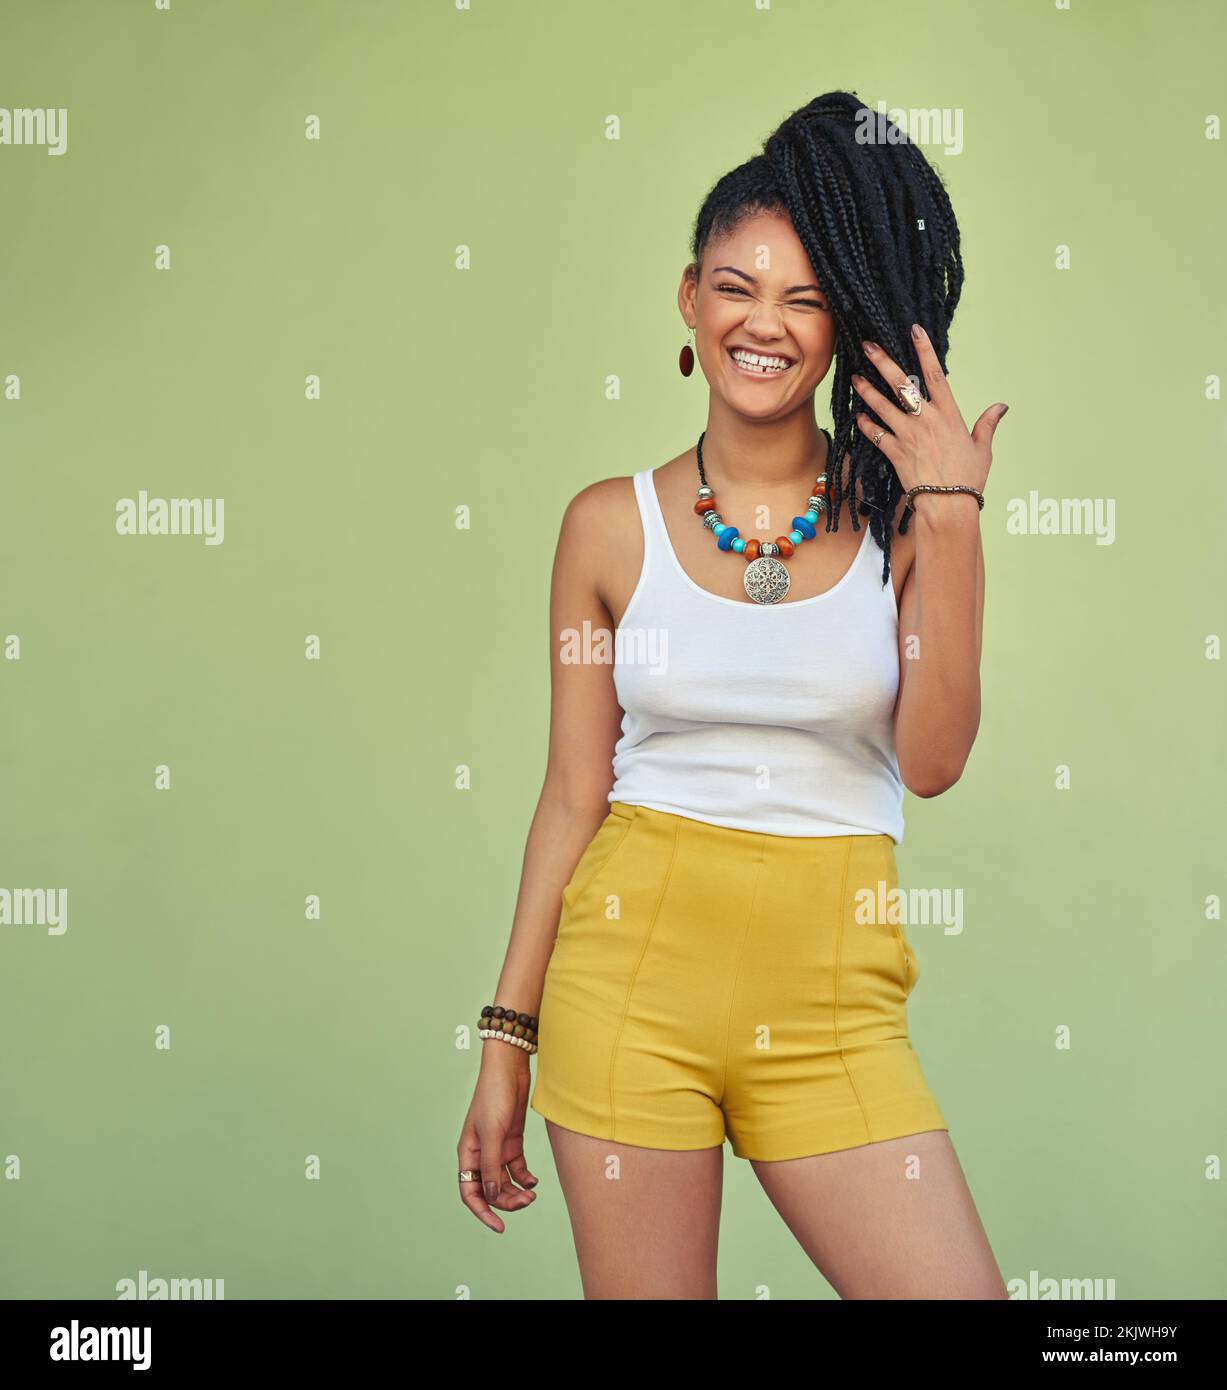 Femme noire de mode, portrait et naturelle avec des tresses profitant de la jeunesse, des vacances et de la liberté d'été. Heureux, bien-être et sourire enthousiaste de la jeune jamaïcaine Banque D'Images